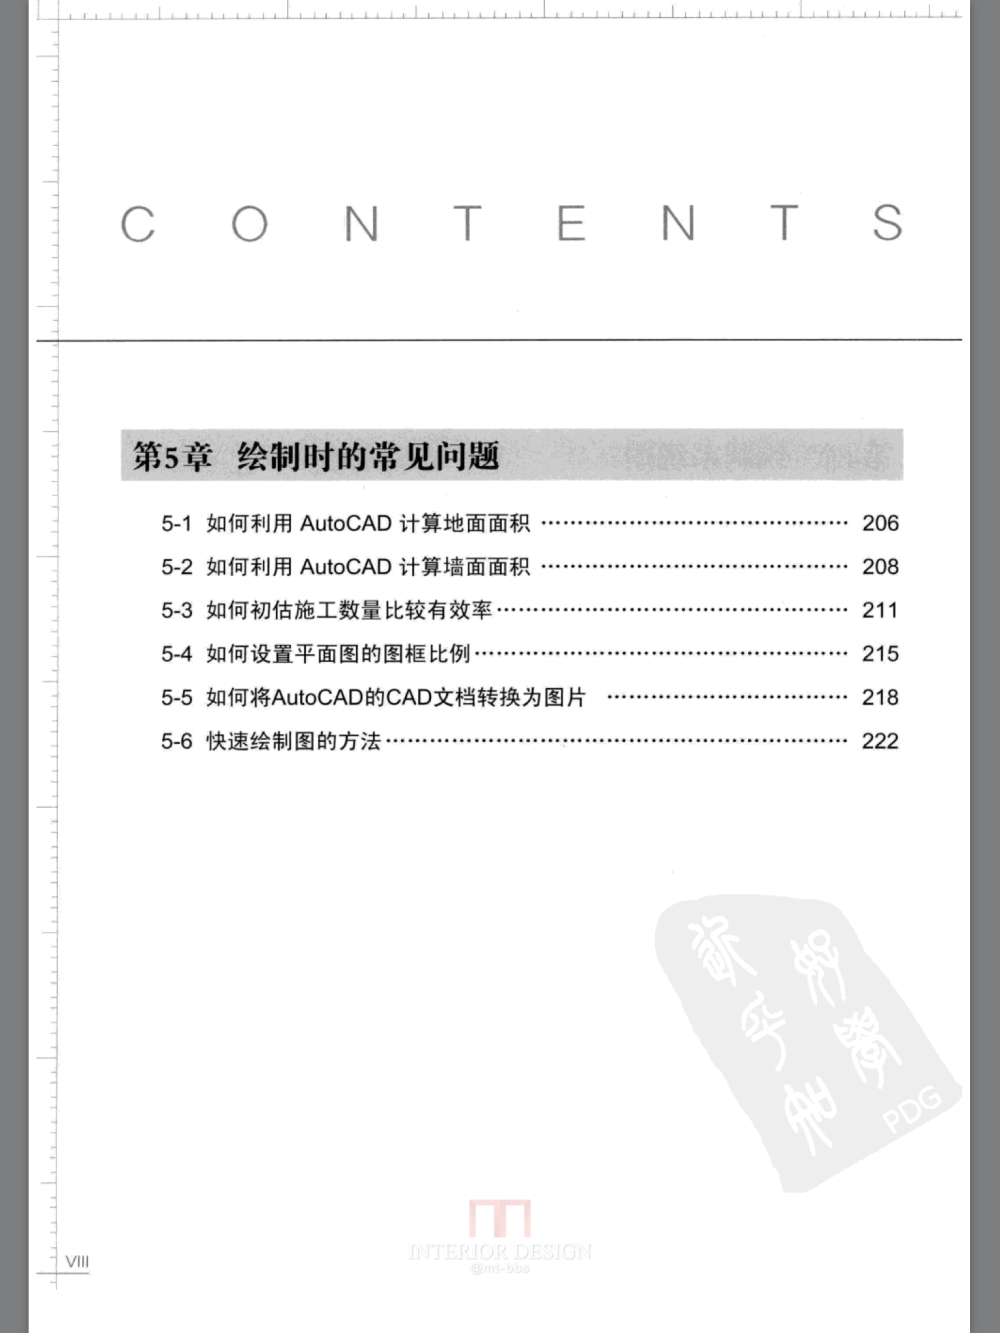 室内装饰材料应用与施工的书什么的PDF版_img_0146.png